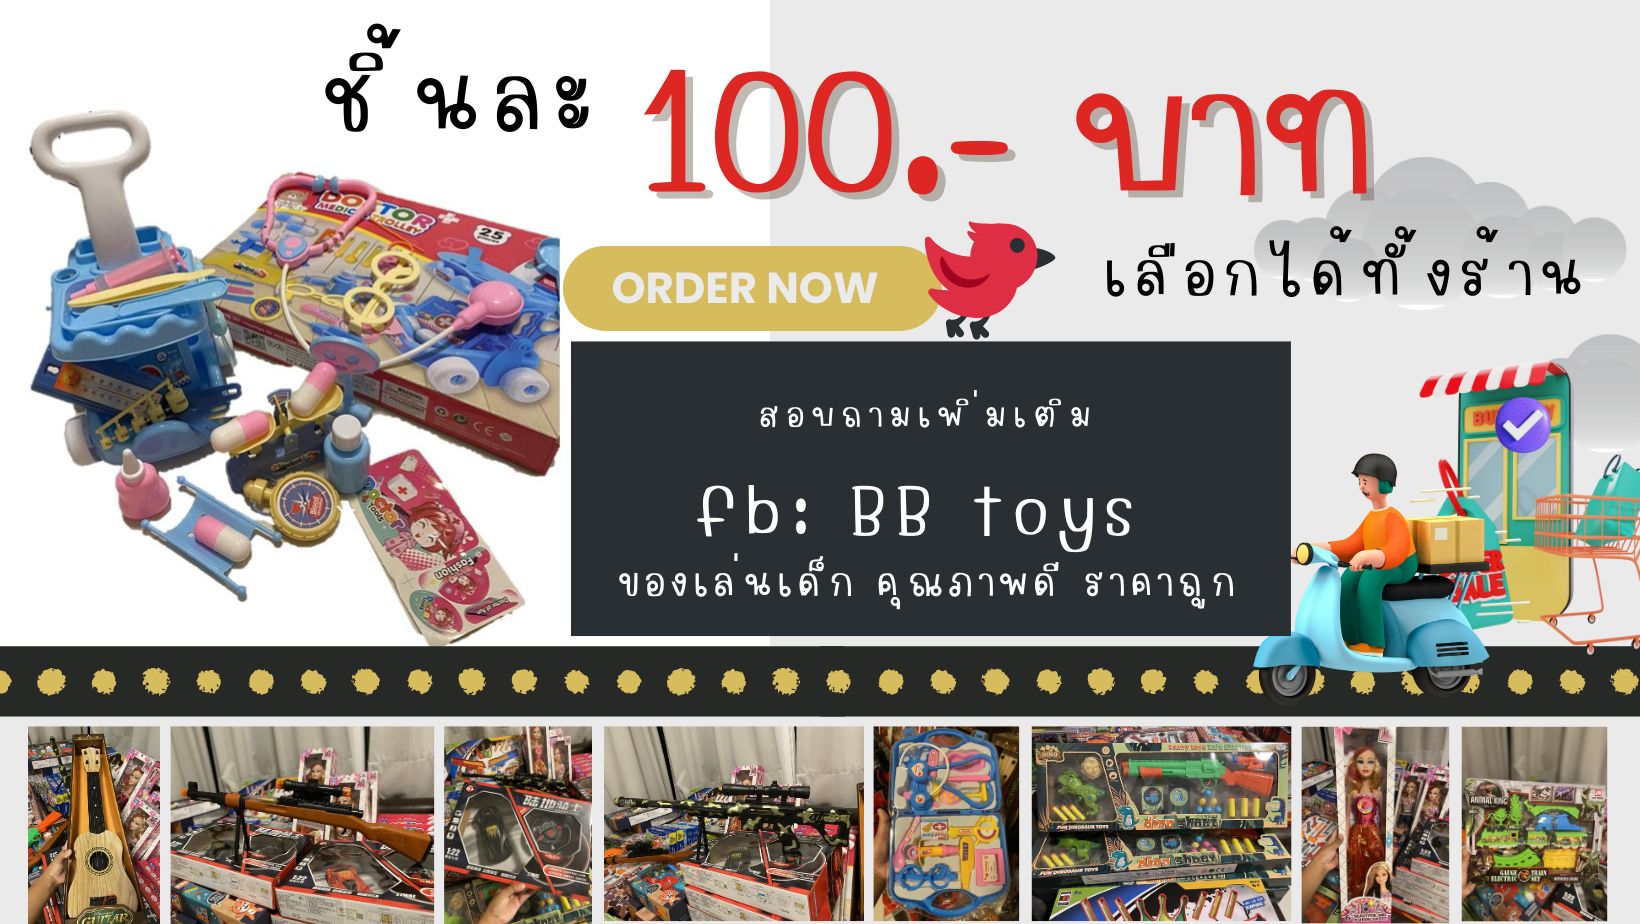 BB Toys จำหน่ายของเล่นเด็กชิ้นละ 100 บาททั้งร้าน มีให้เลือกมากมาย ทั้งของเล่นเด็กชายและเด็กหญิง  คุณภาพดี ซื้อ 3 ชิ้นขึ้นไปส่งฟรี รูปที่ 1